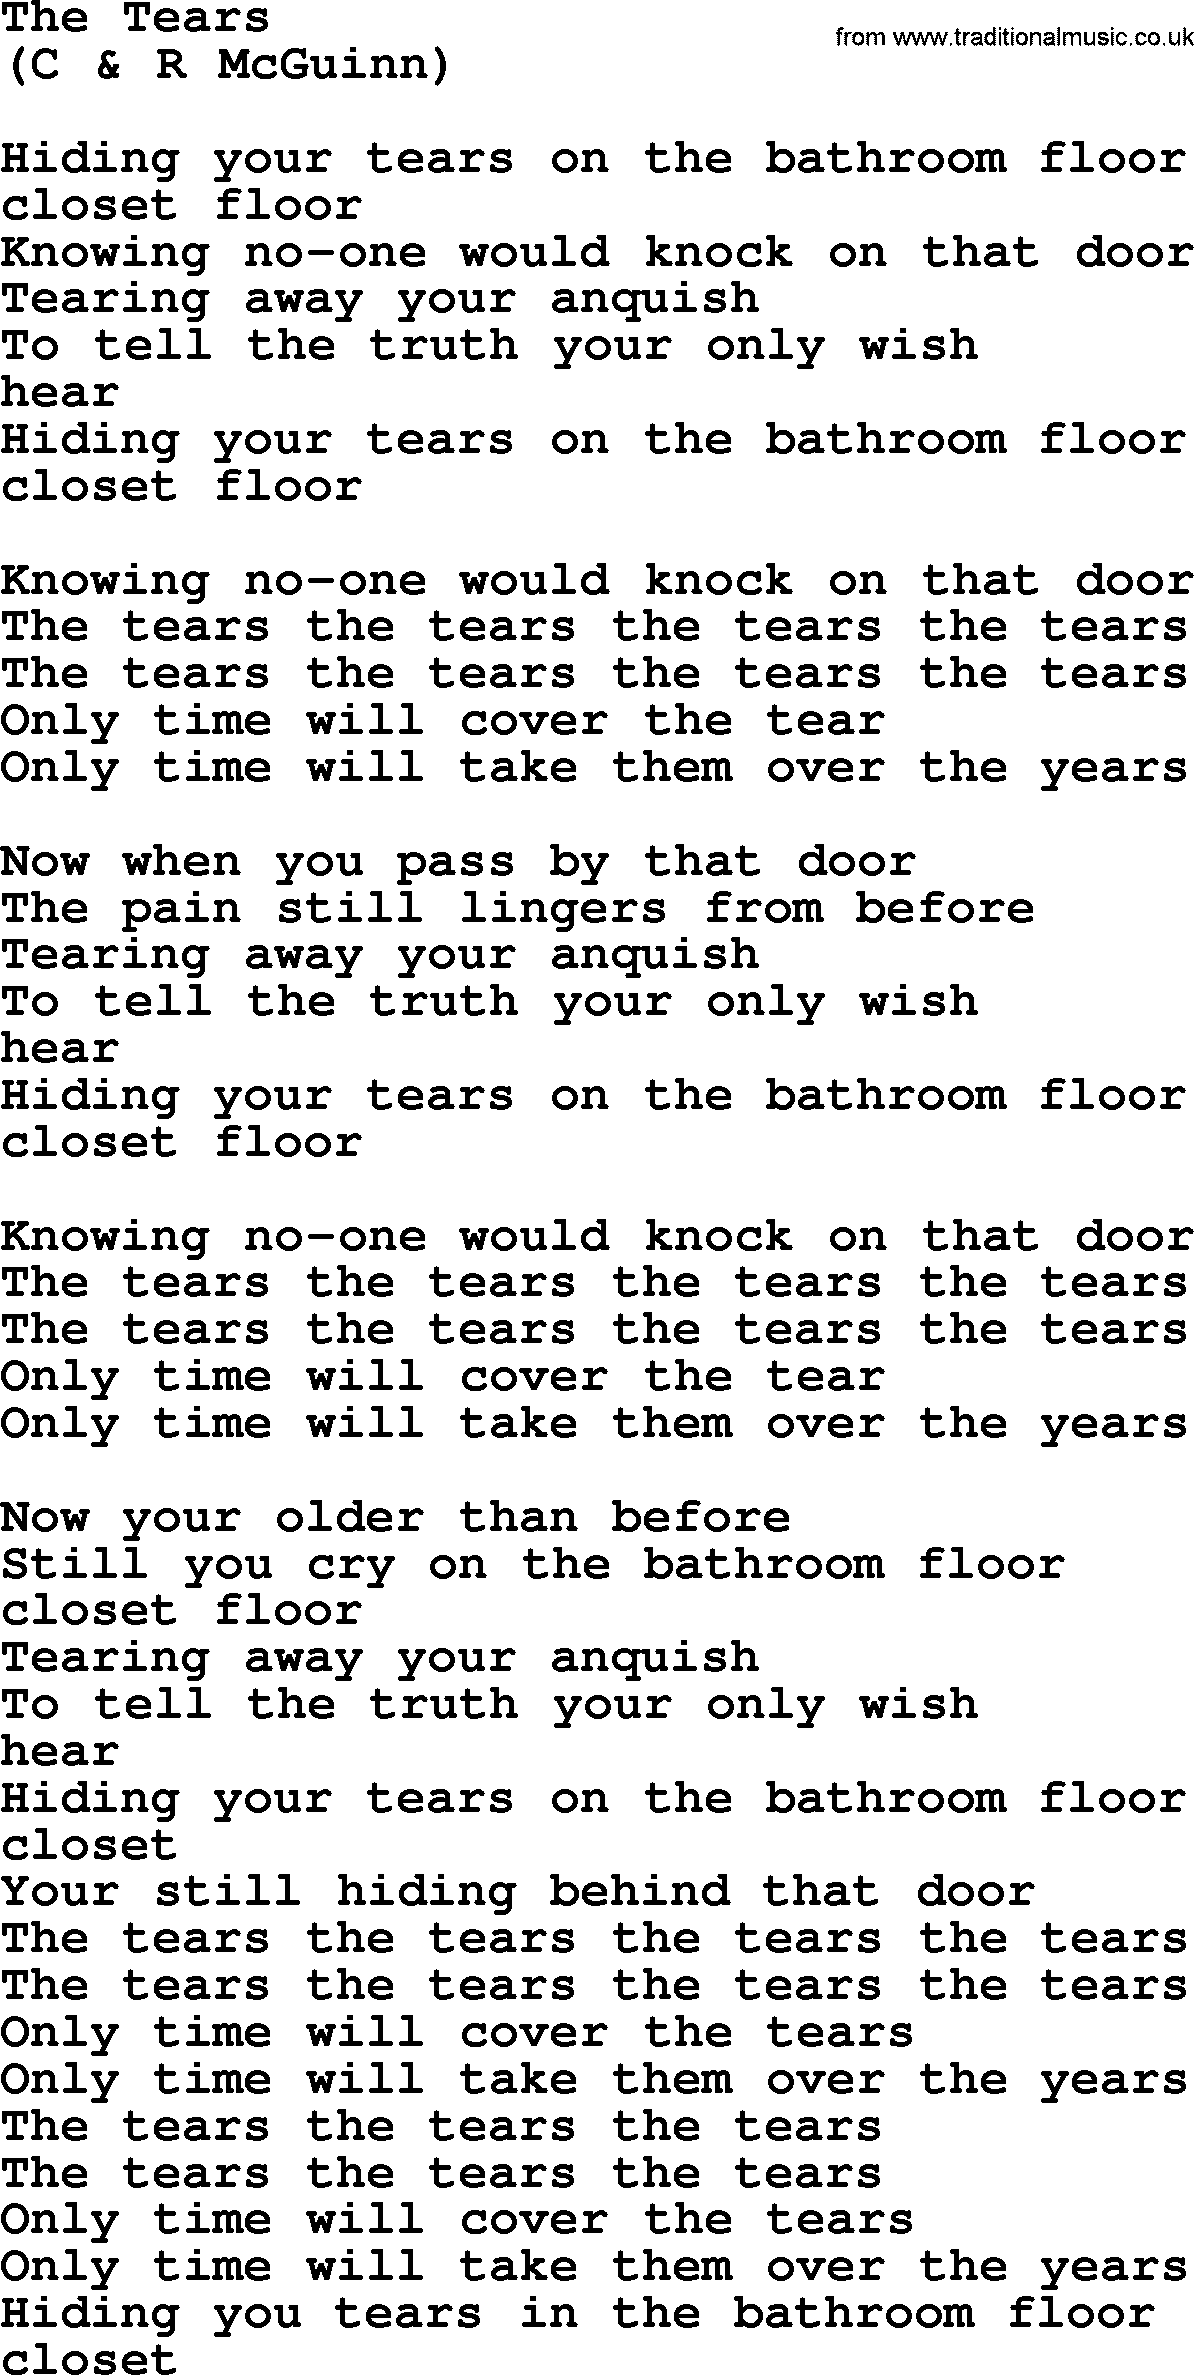 The Byrds song The Tears, lyrics